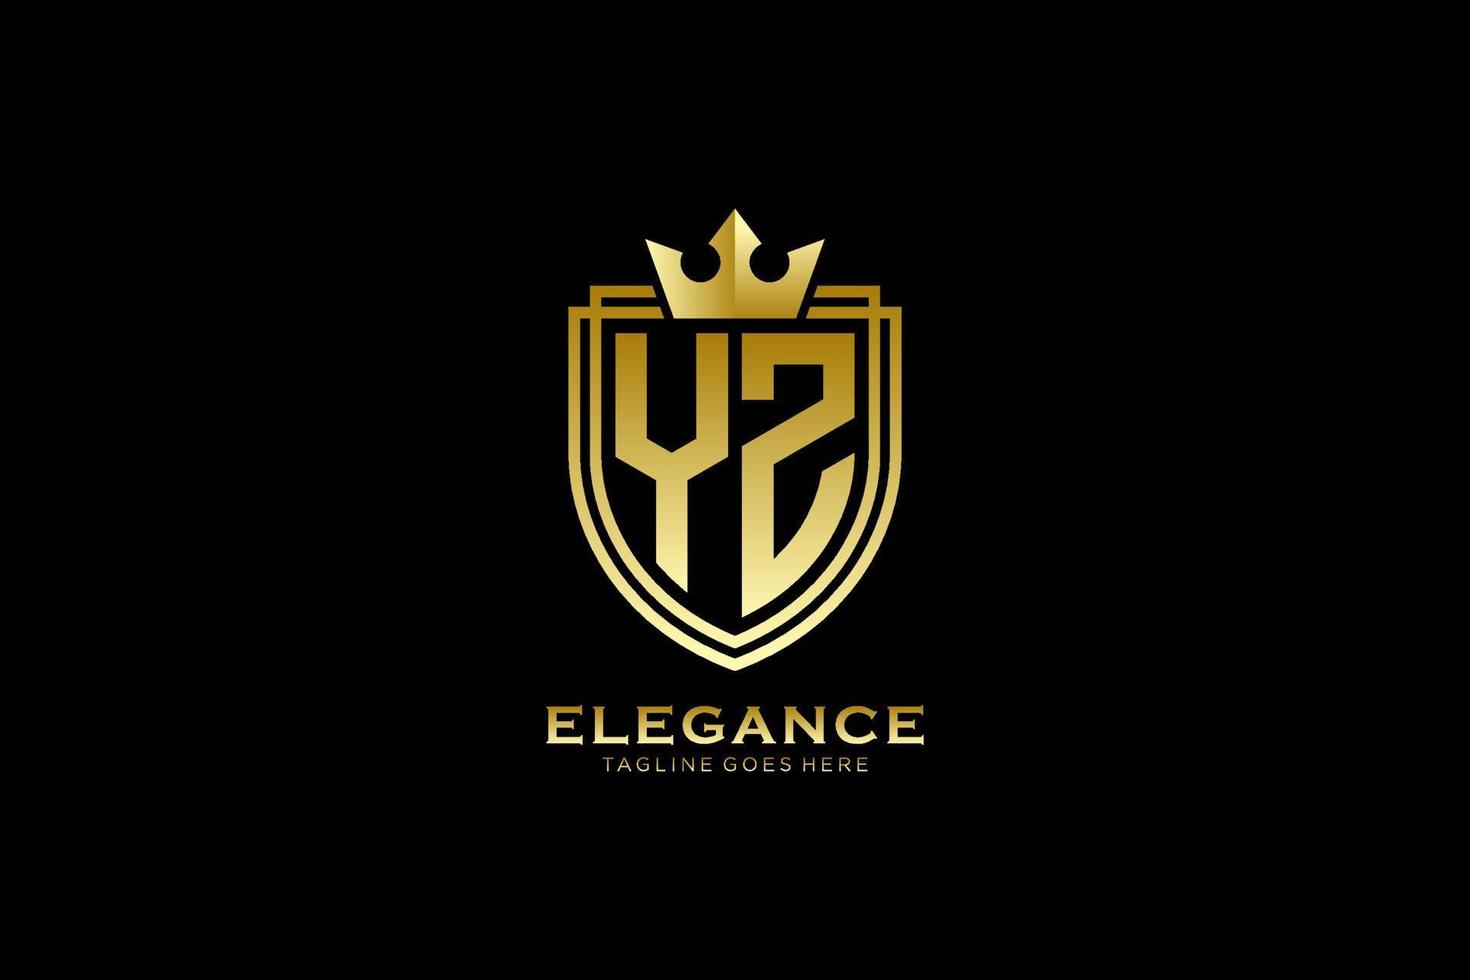 logo monogramme de luxe élégant initial yz ou modèle de badge avec volutes et couronne royale - parfait pour les projets de marque de luxe vecteur